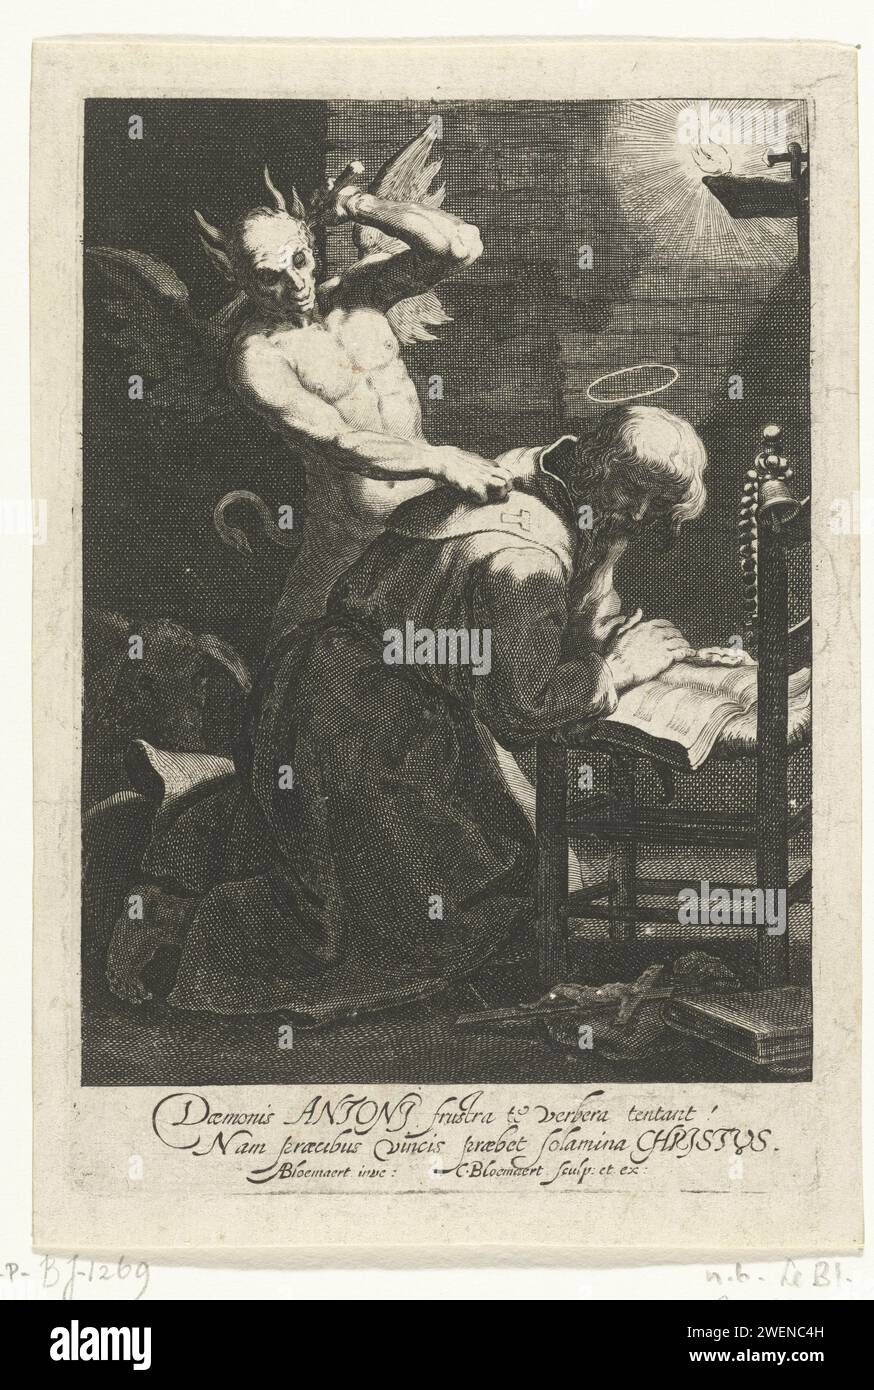 Die Versuchung des Heiligen Antonius, Cornelis Bloemaert (II), nach Abraham Bloemaert, ca. 1620 - ca. 1630 Druck der Heilige Antonius wird vom Teufel in seiner Zelle angegriffen. Antonius weert ihn, indem er betet. Papiergravur Versuchungen von St. Antonius Abt Stockfoto